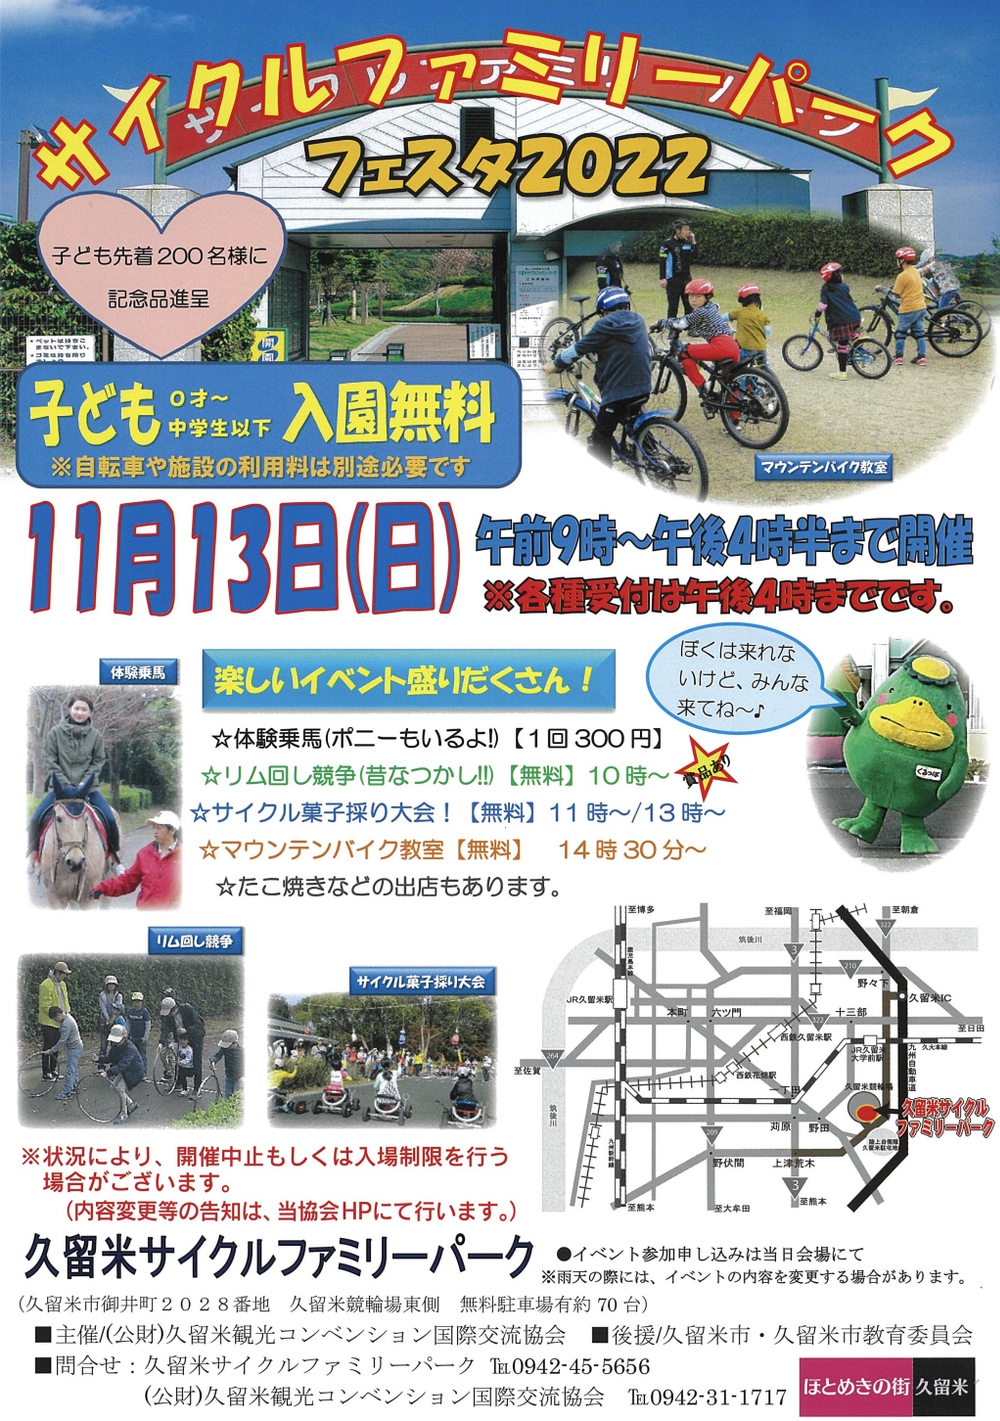 久留米サイクルファミリーパークフェスタ2022 サイクル菓子採り大会や体験乗馬など開催